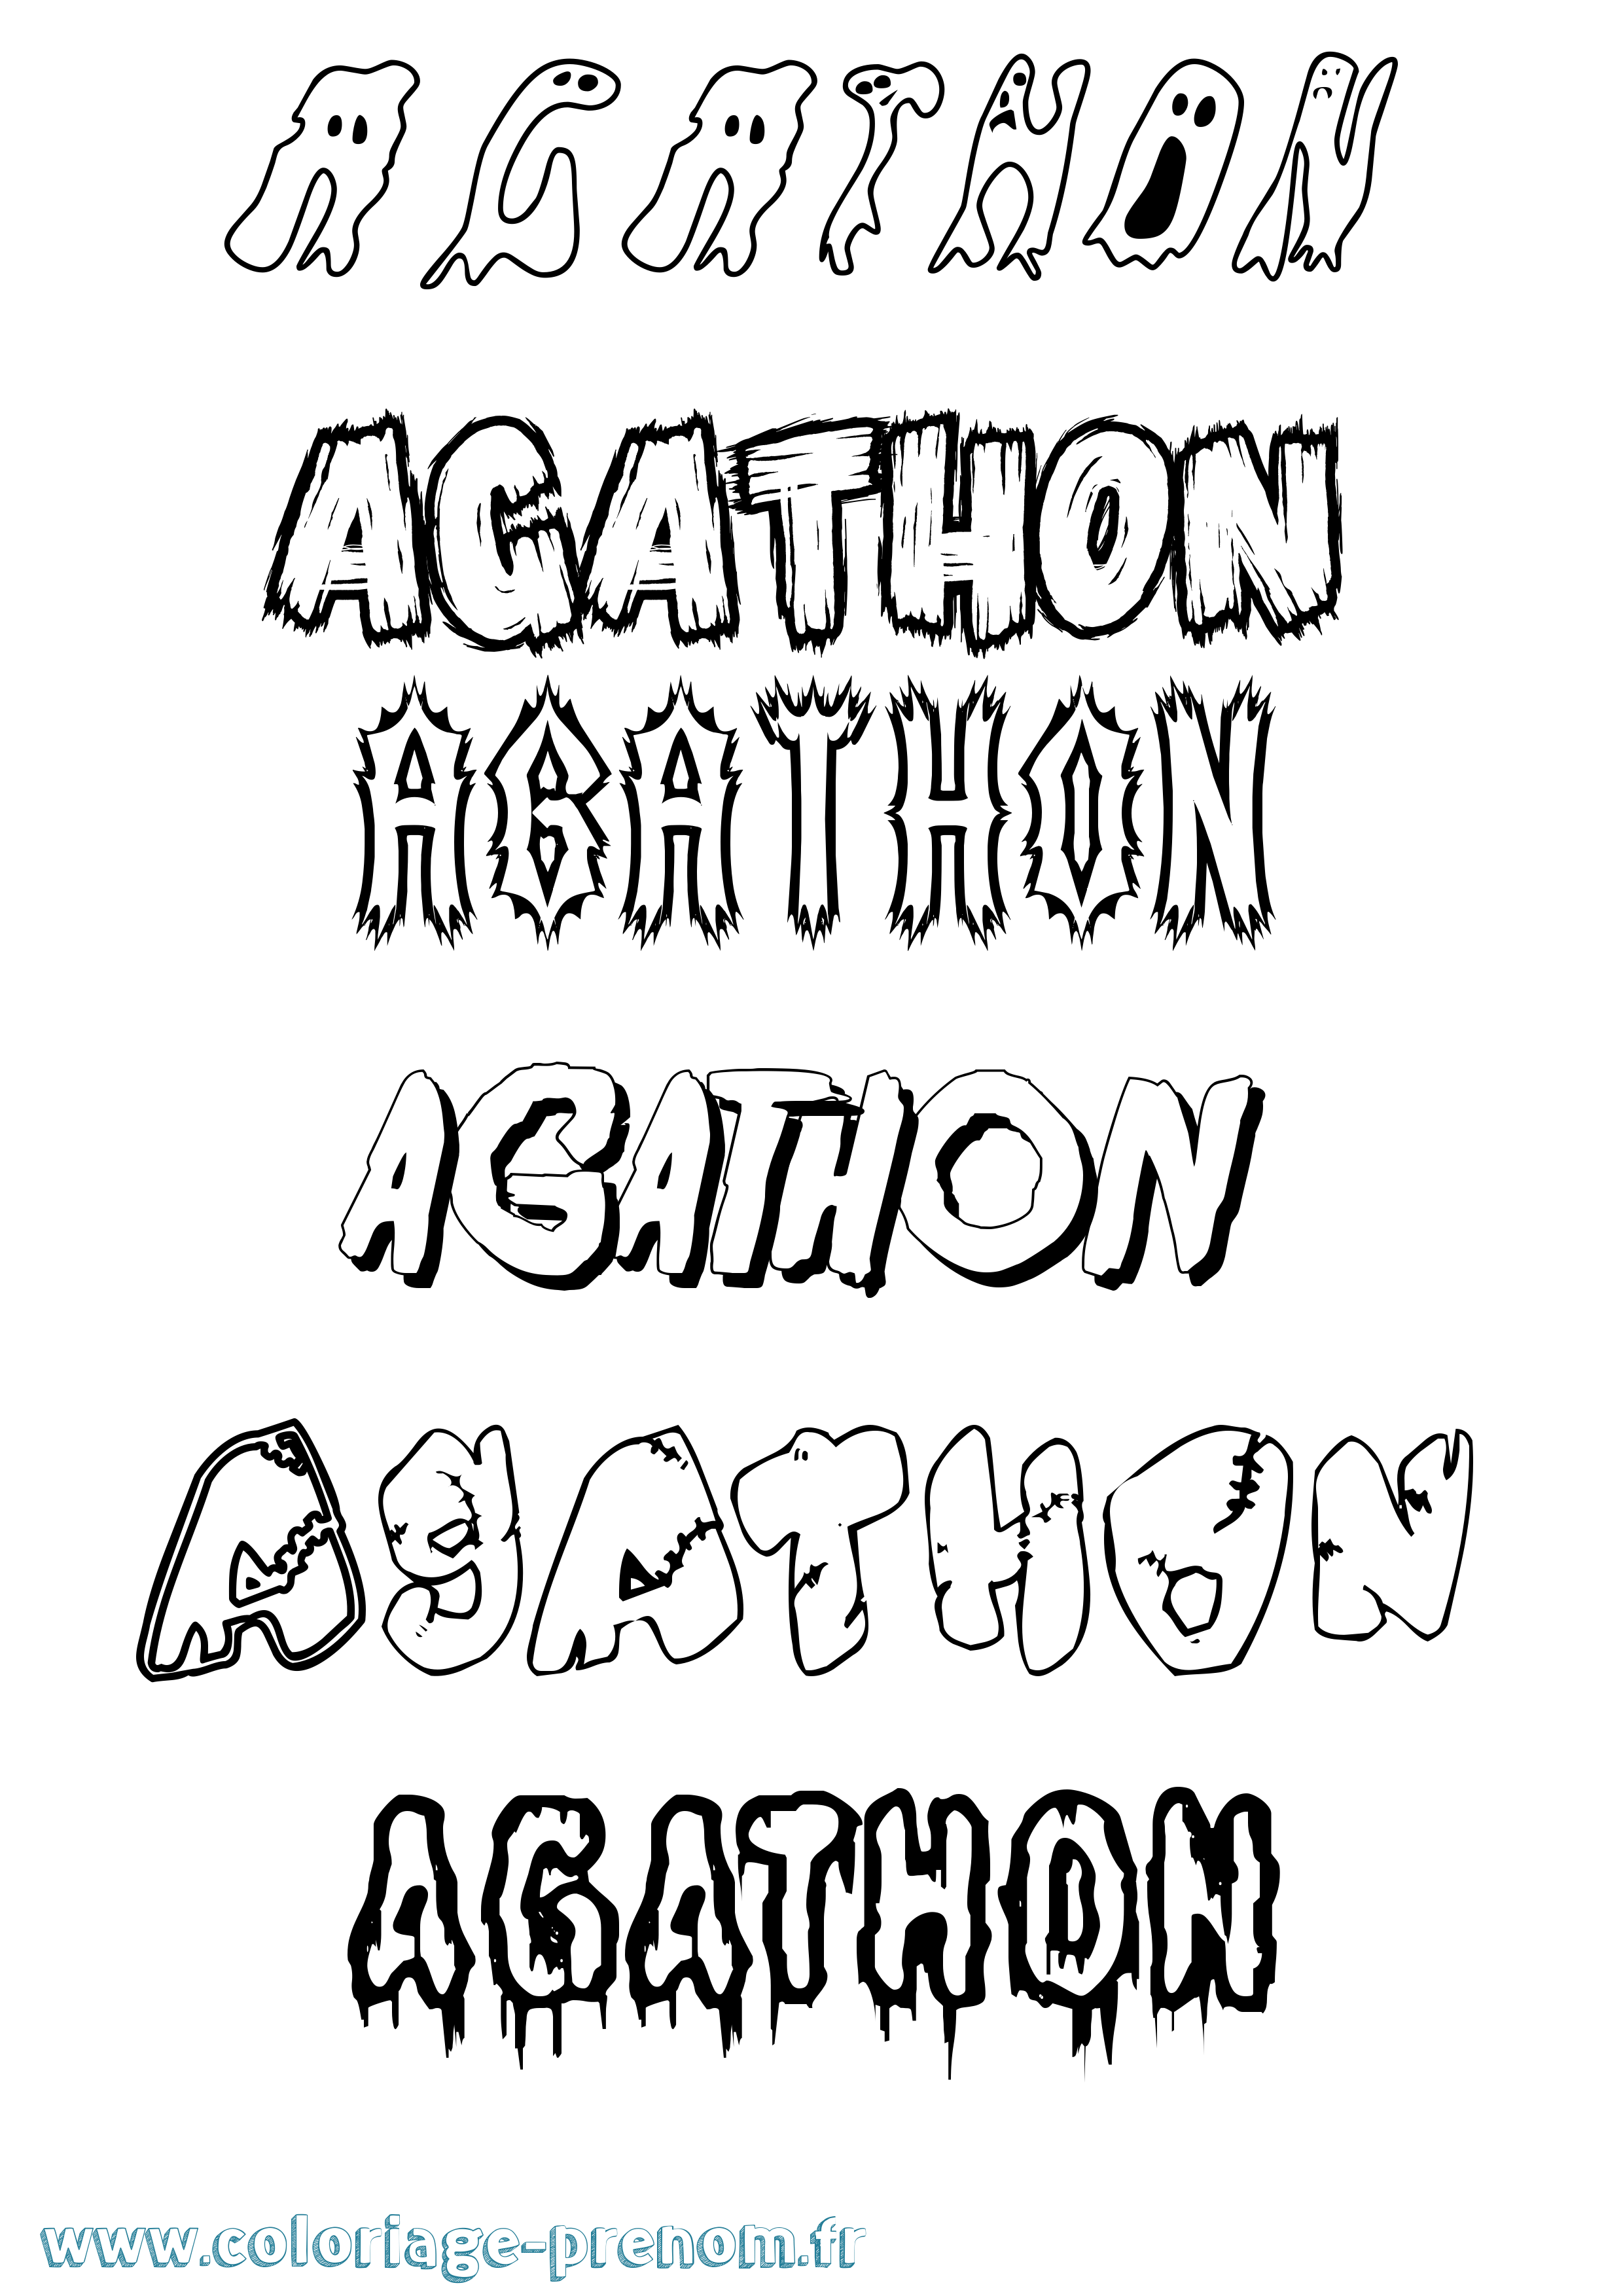 Coloriage prénom Agathon Frisson